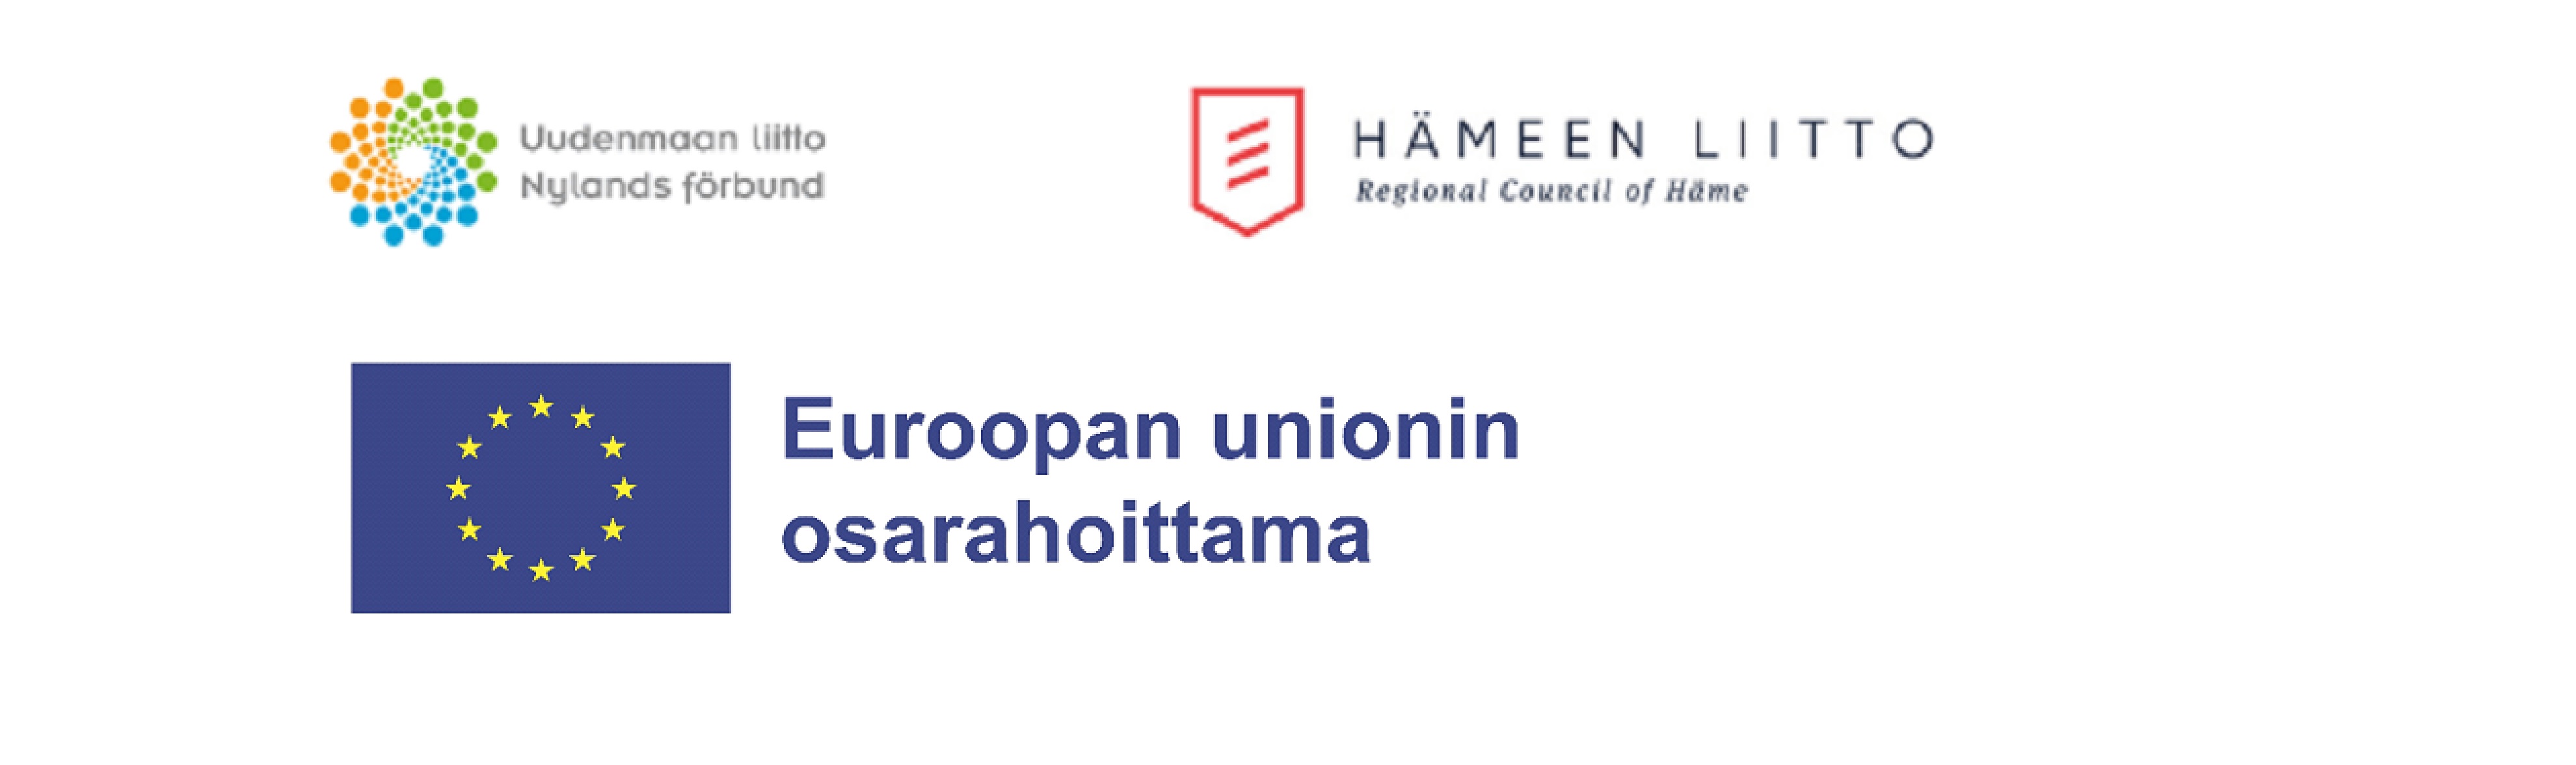 Uudenmaanliiton, Hämeeniiton ja EU:n logot